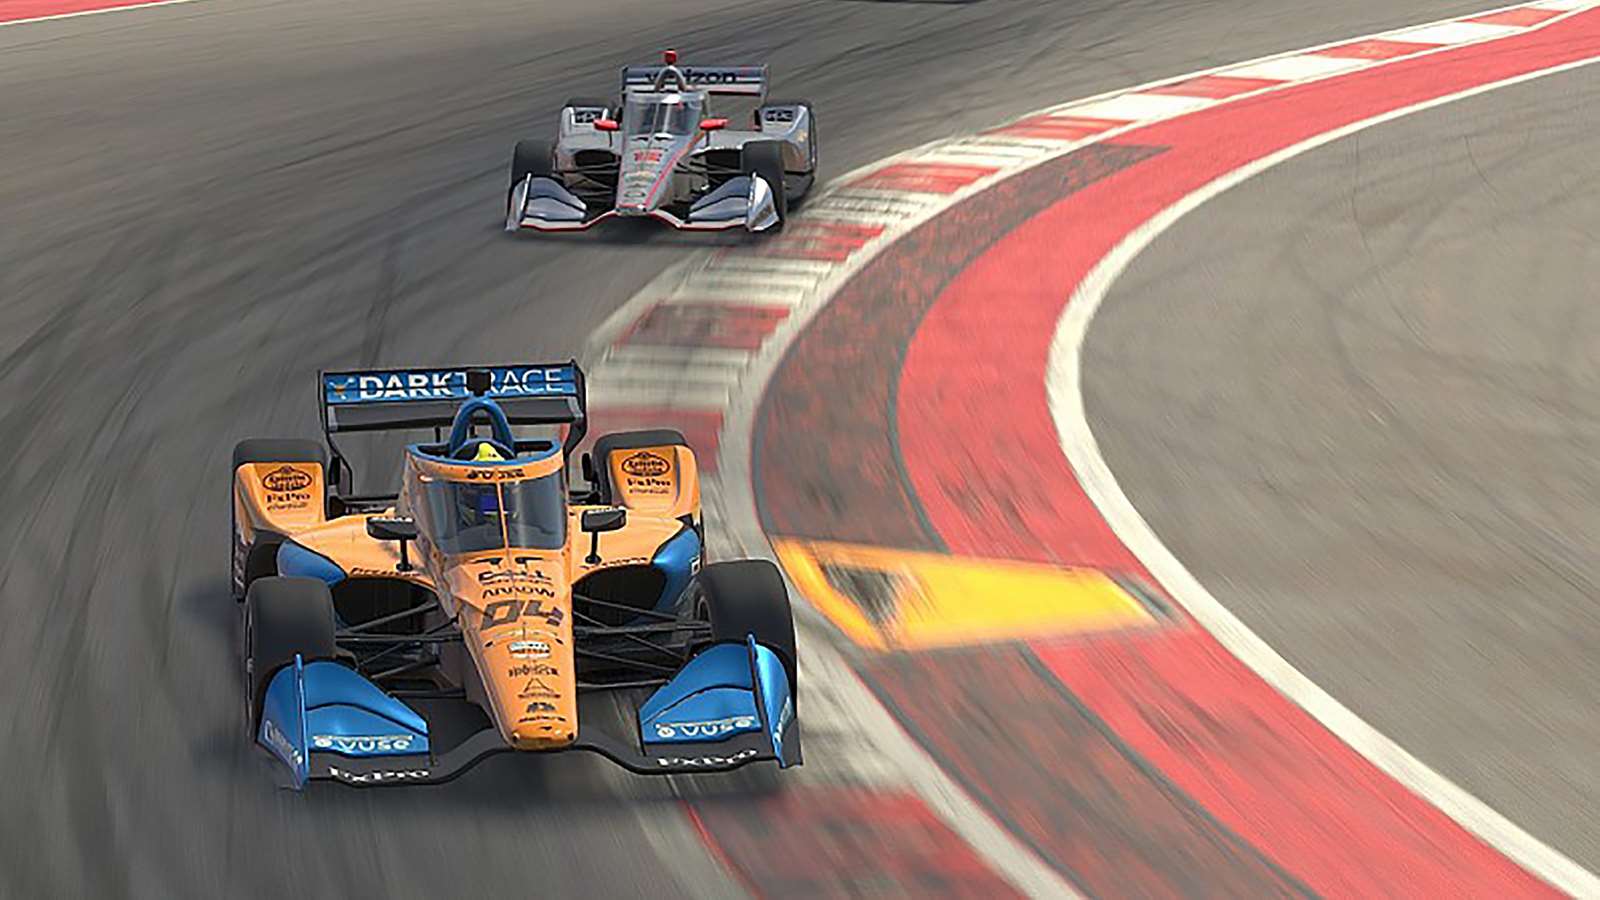 Lando Norris races to victoy in his IndyCar esports debut